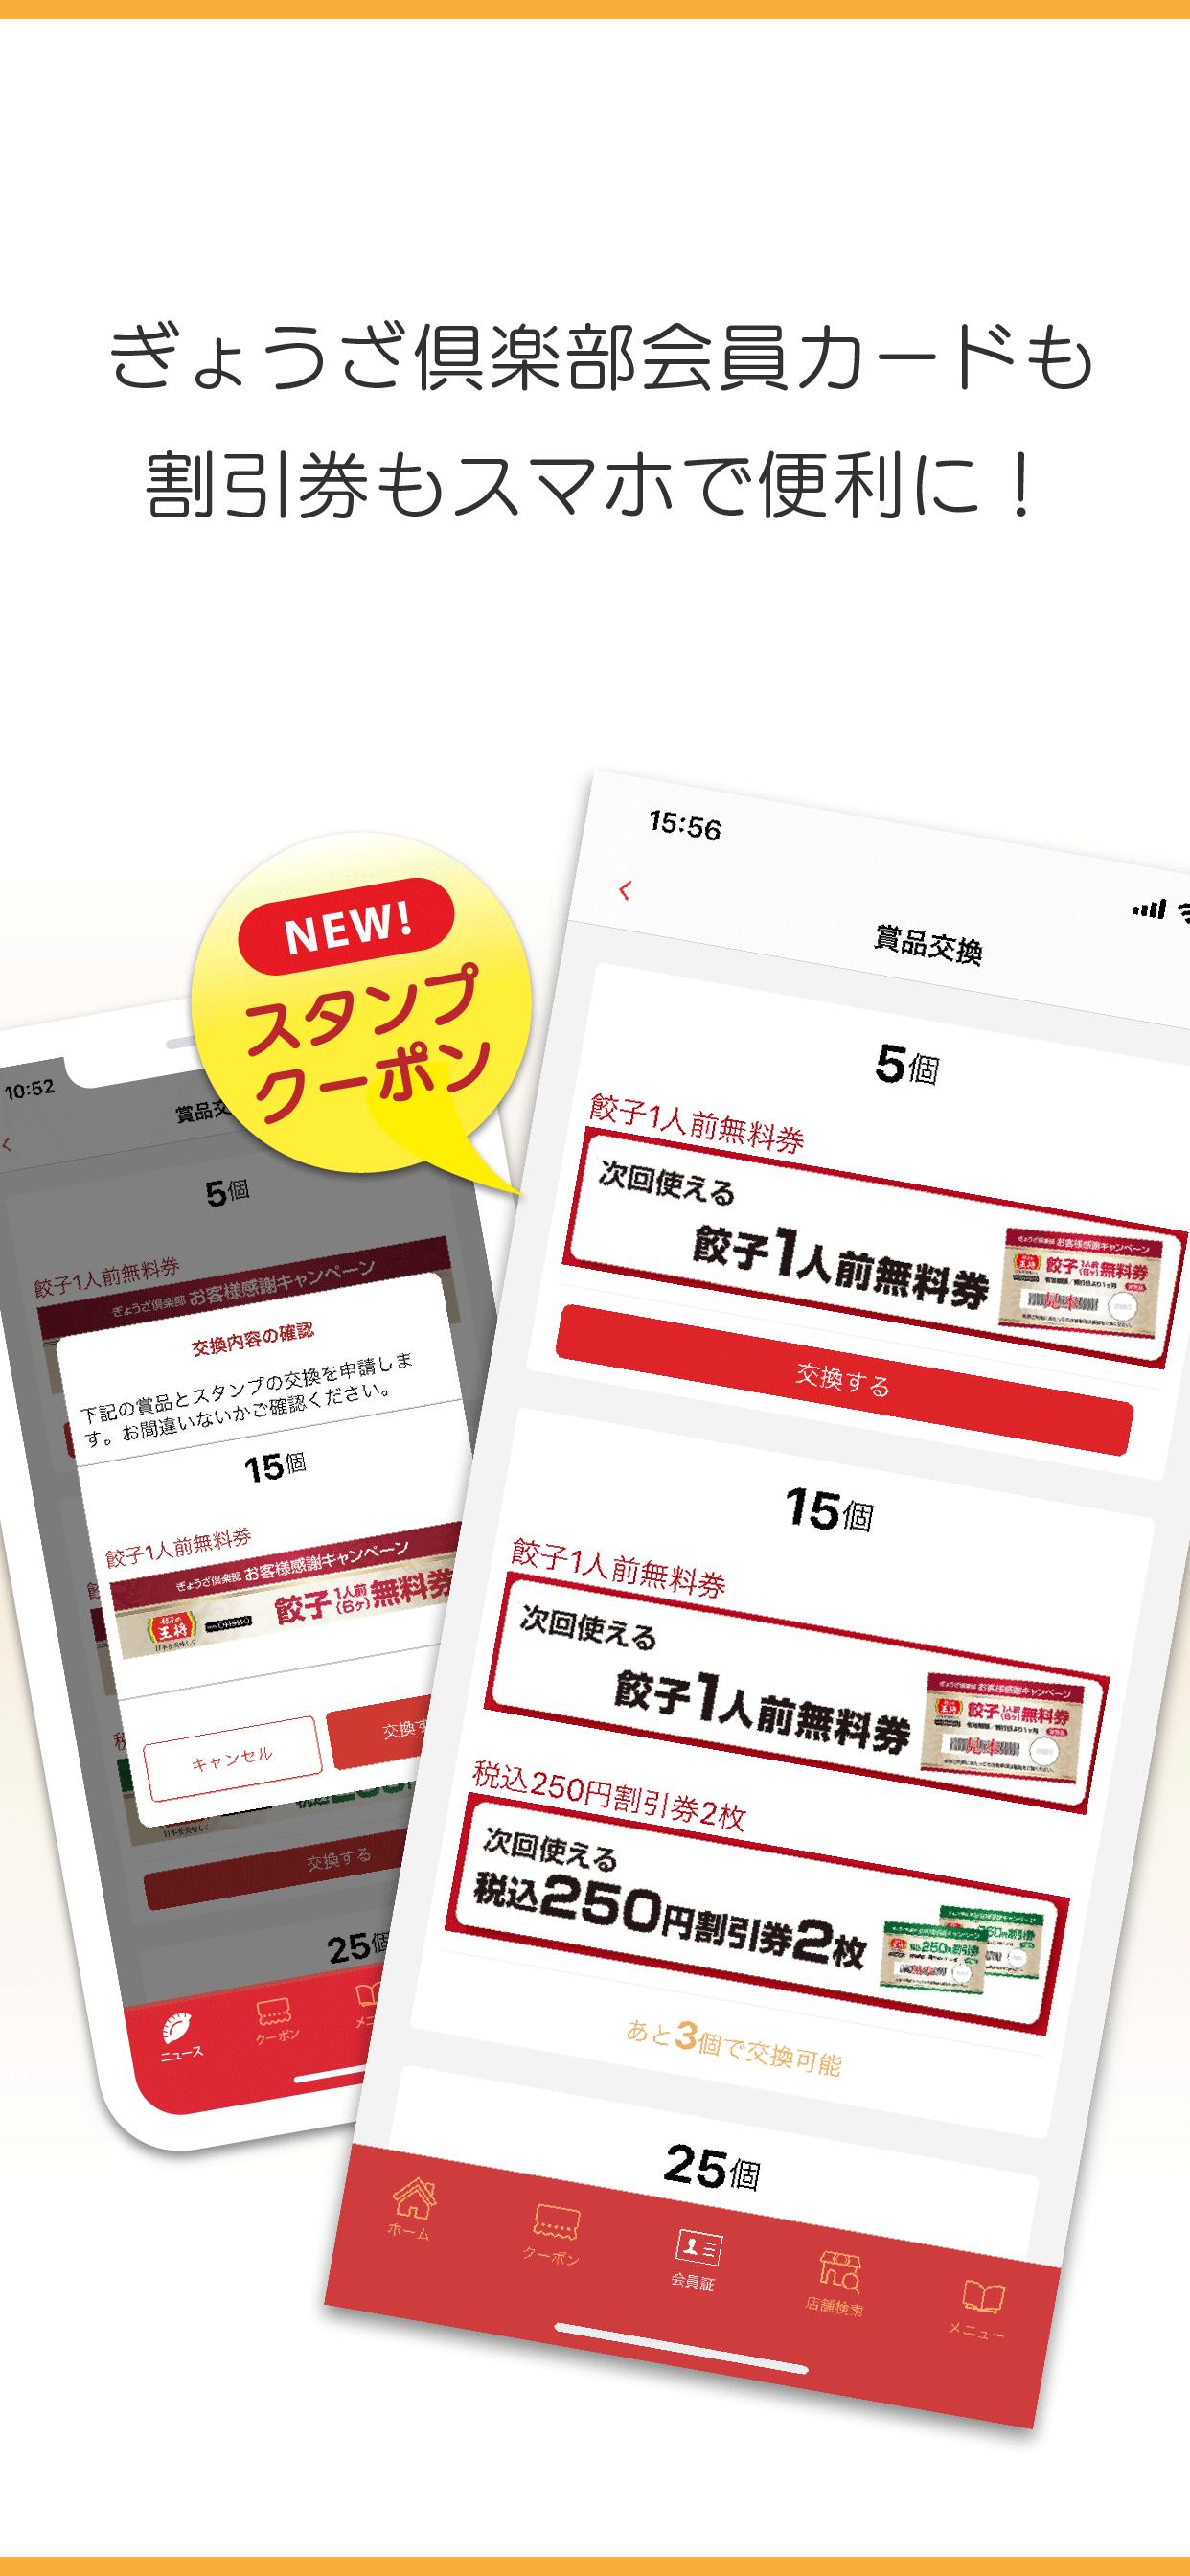 餃子の王将公式アプリ 3.0.3 Screenshot 4